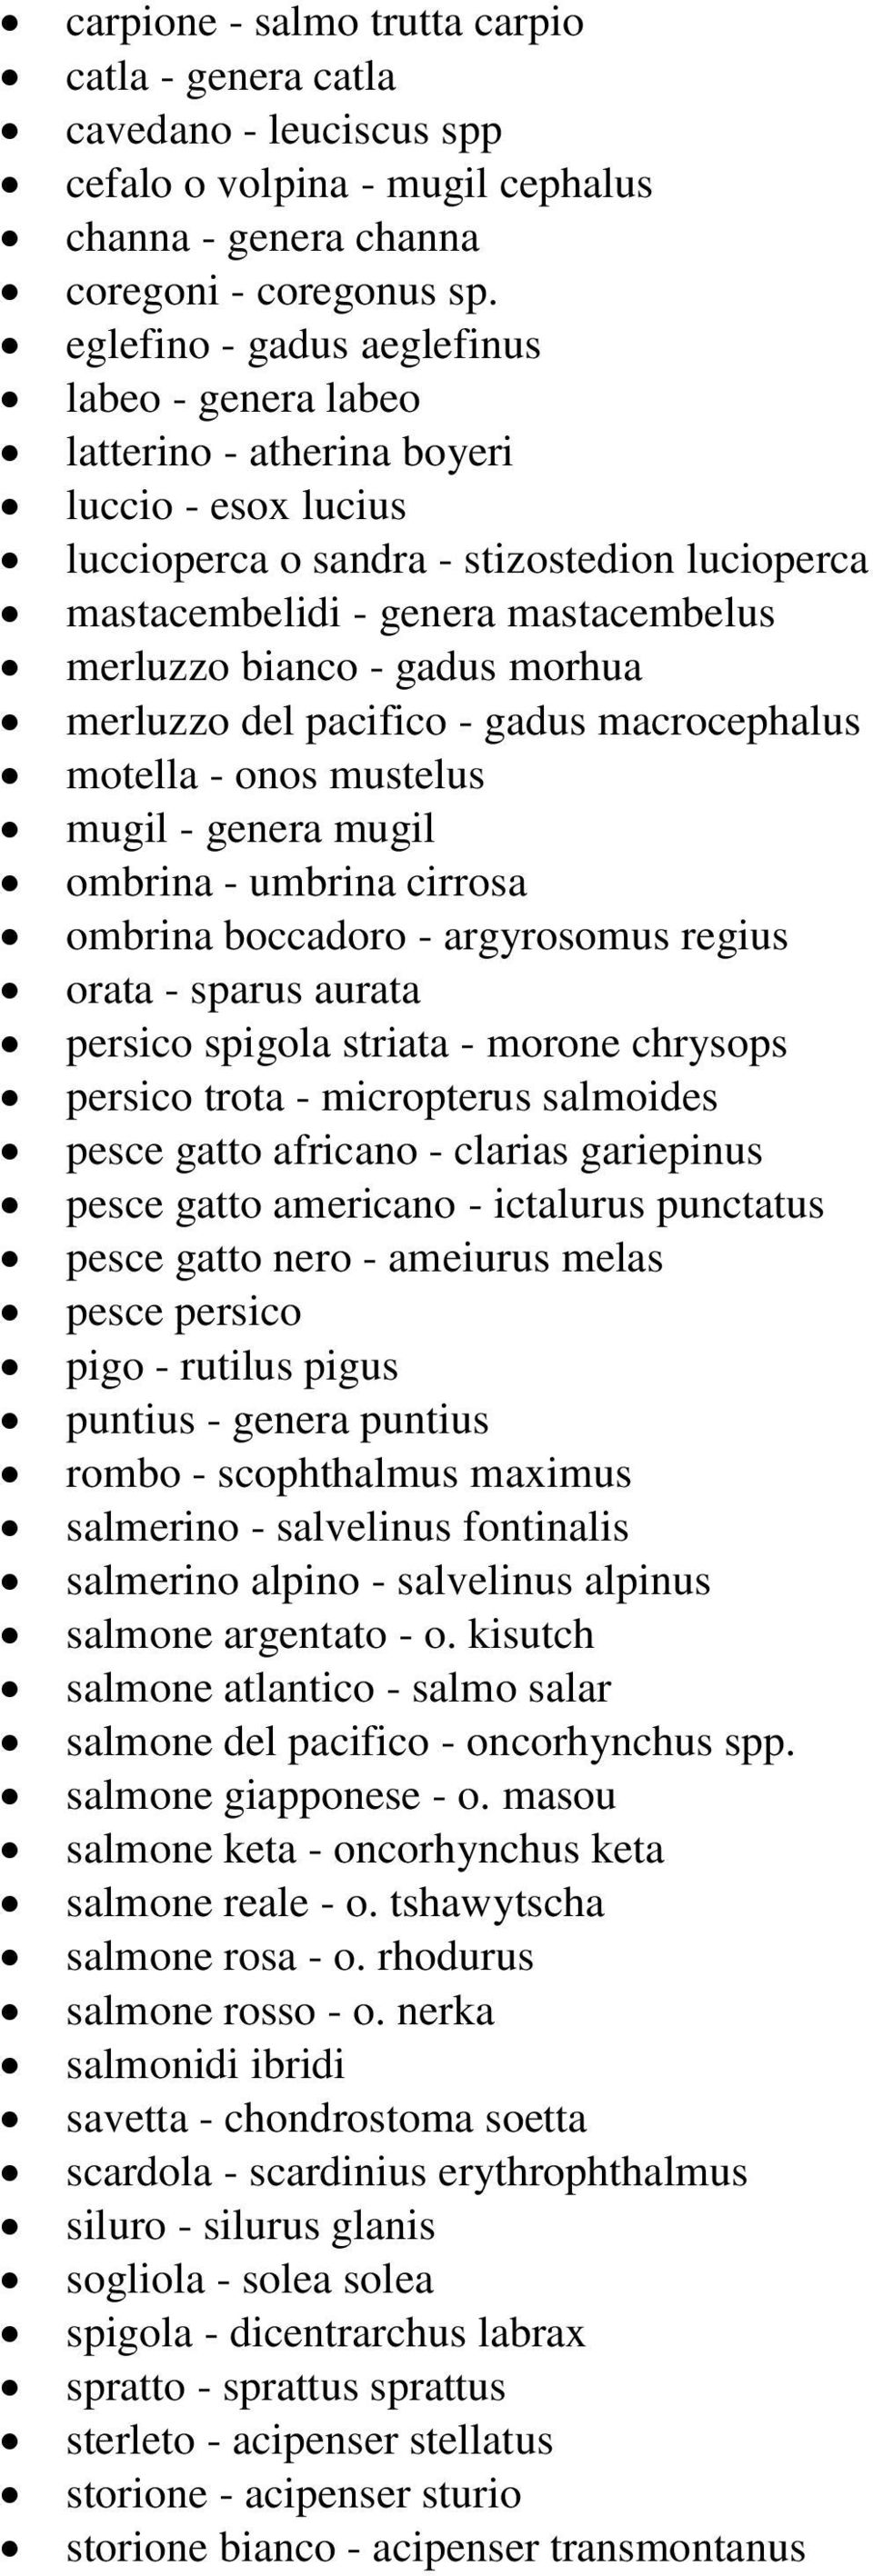 - gadus morhua merluzzo del pacifico - gadus macrocephalus motella - onos mustelus mugil - genera mugil ombrina - umbrina cirrosa ombrina boccadoro - argyrosomus regius orata - sparus aurata persico